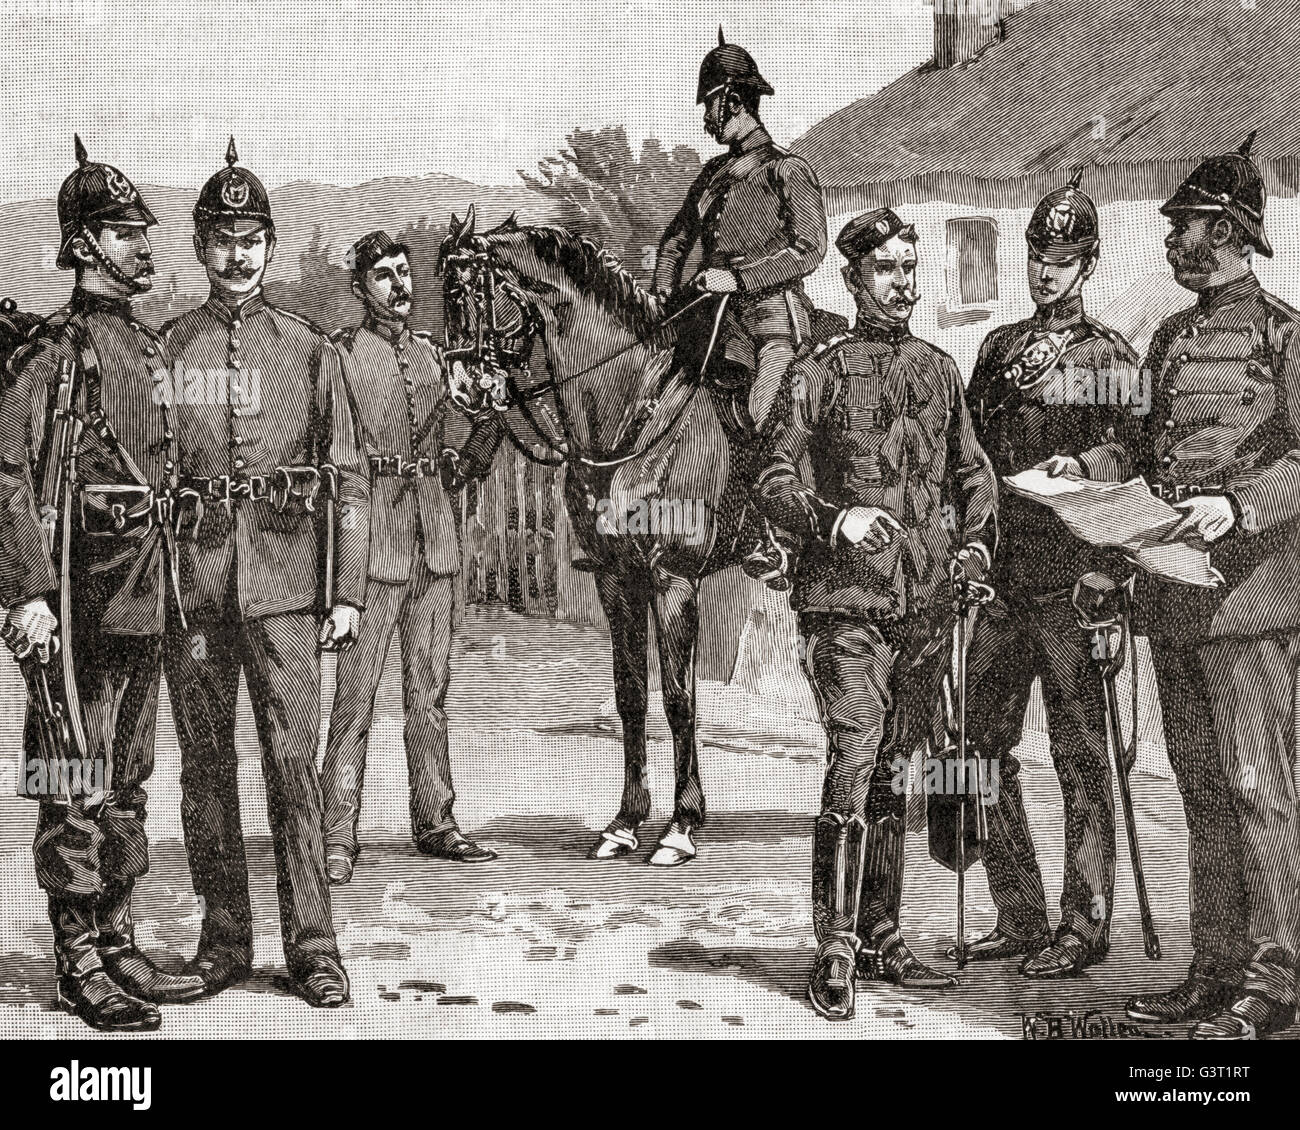 Les officiers et les hommes de la police royale irlandaise au 19e siècle, les forces de police du Royaume-Uni en Irlande jusqu'en 1922. Banque D'Images